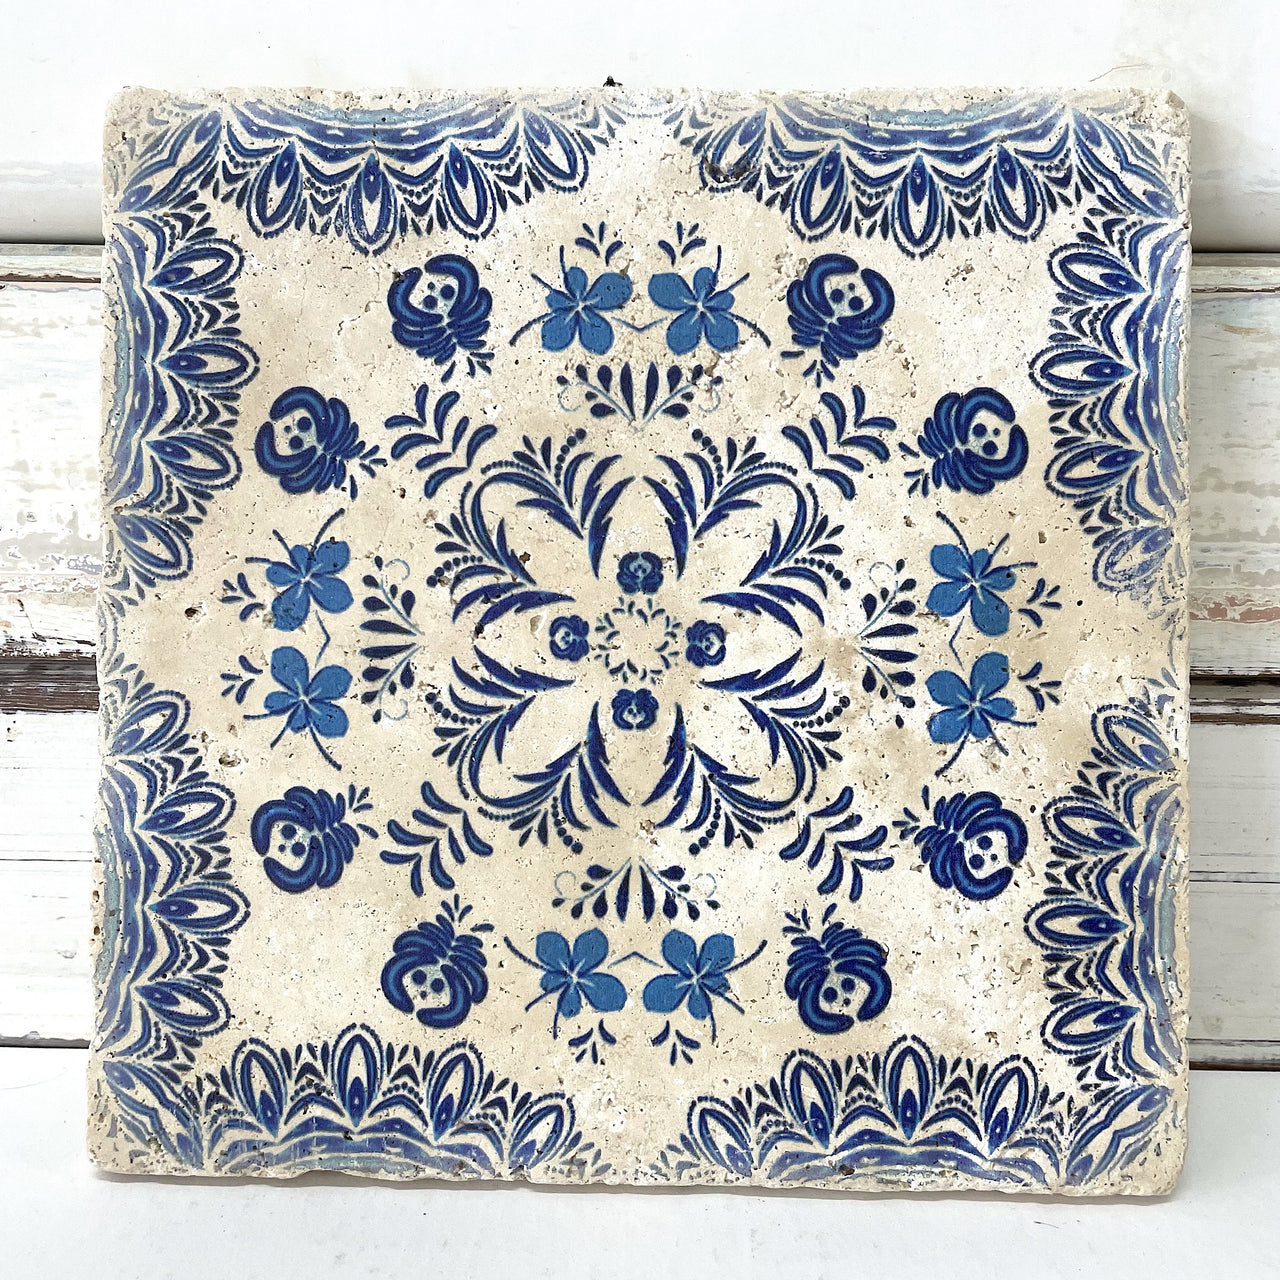 Moroccan Printed Tile #112